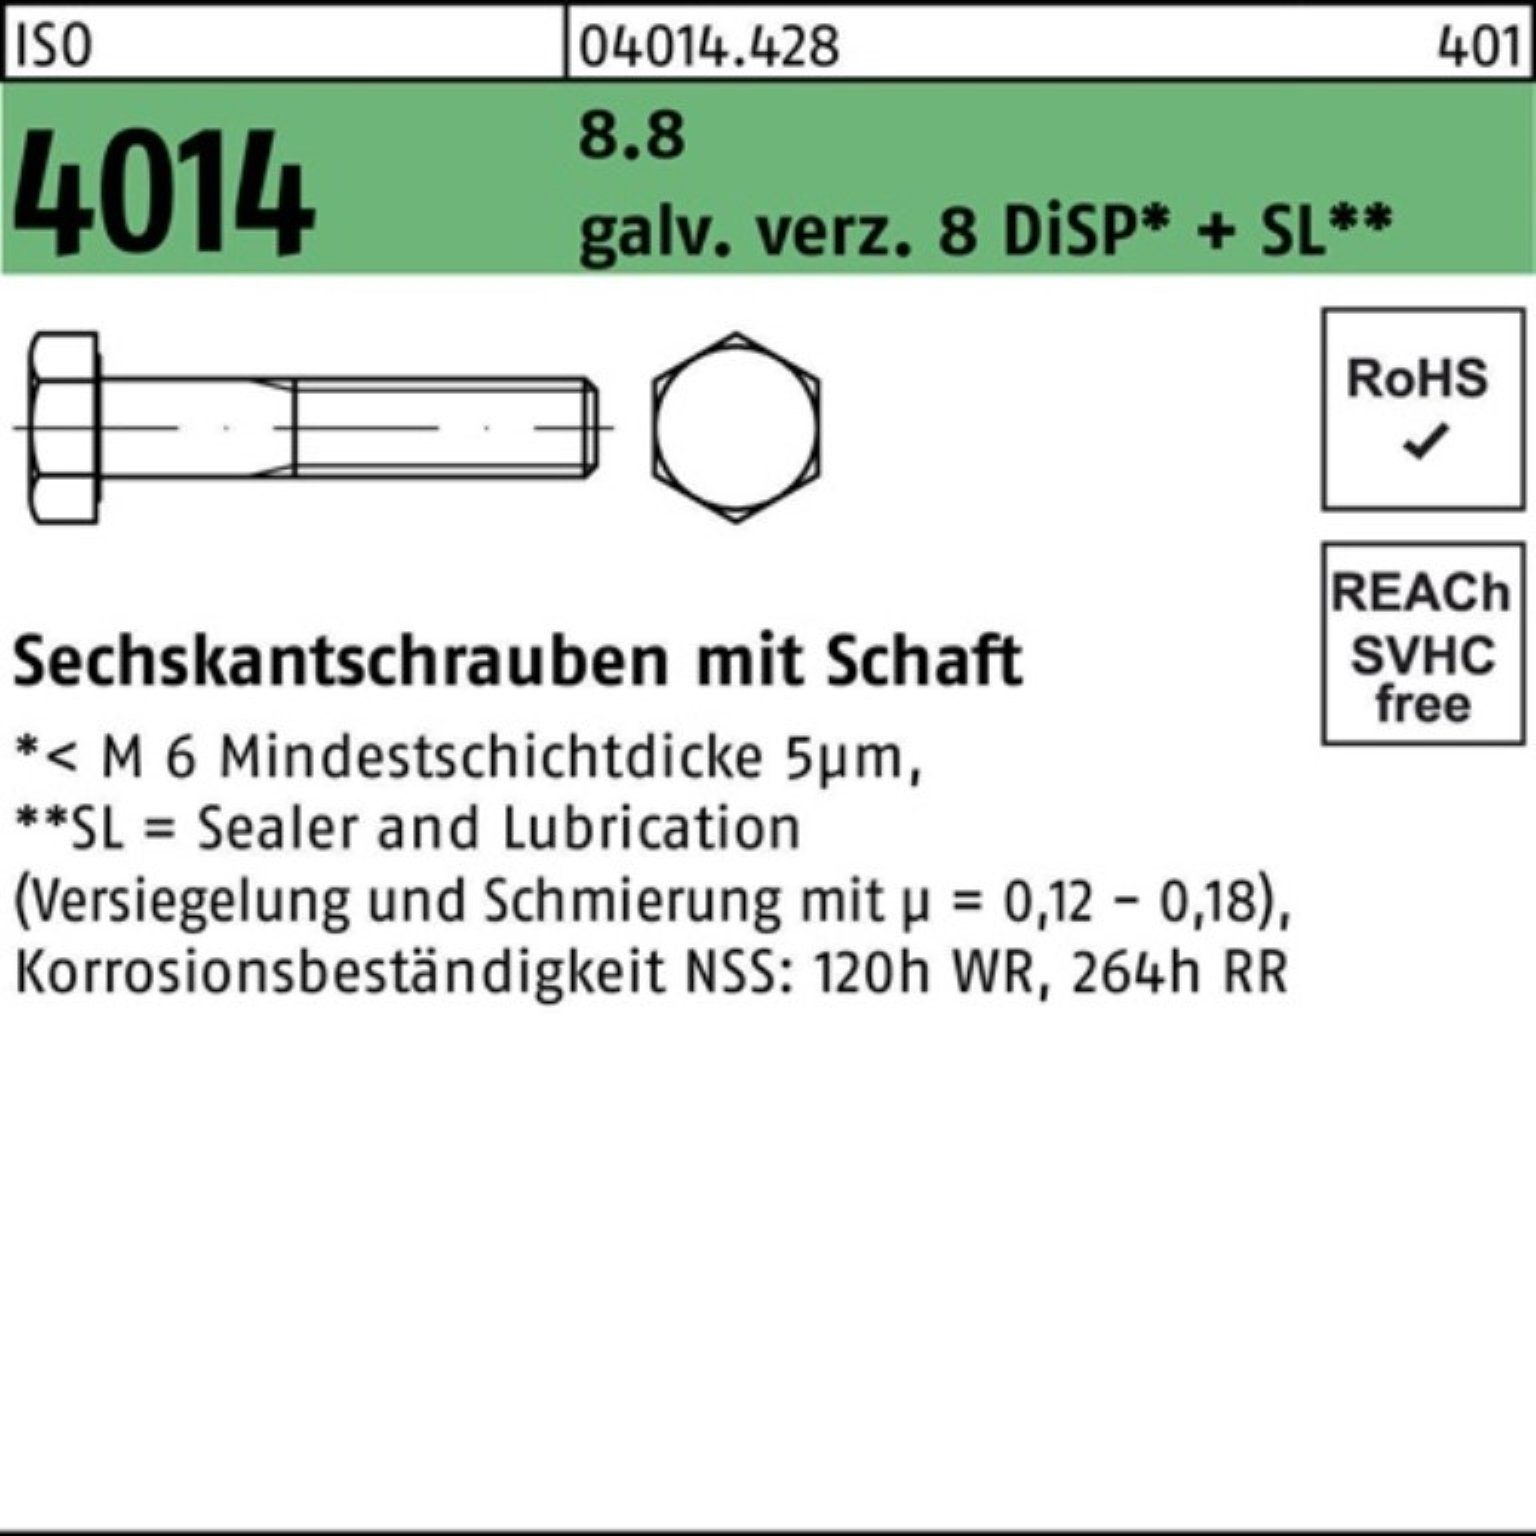 Bufab Sechskantschraube 100er Pack 8 4014 8.8 galv.verz. ISO Sechskantschraube M20x260 Schaft